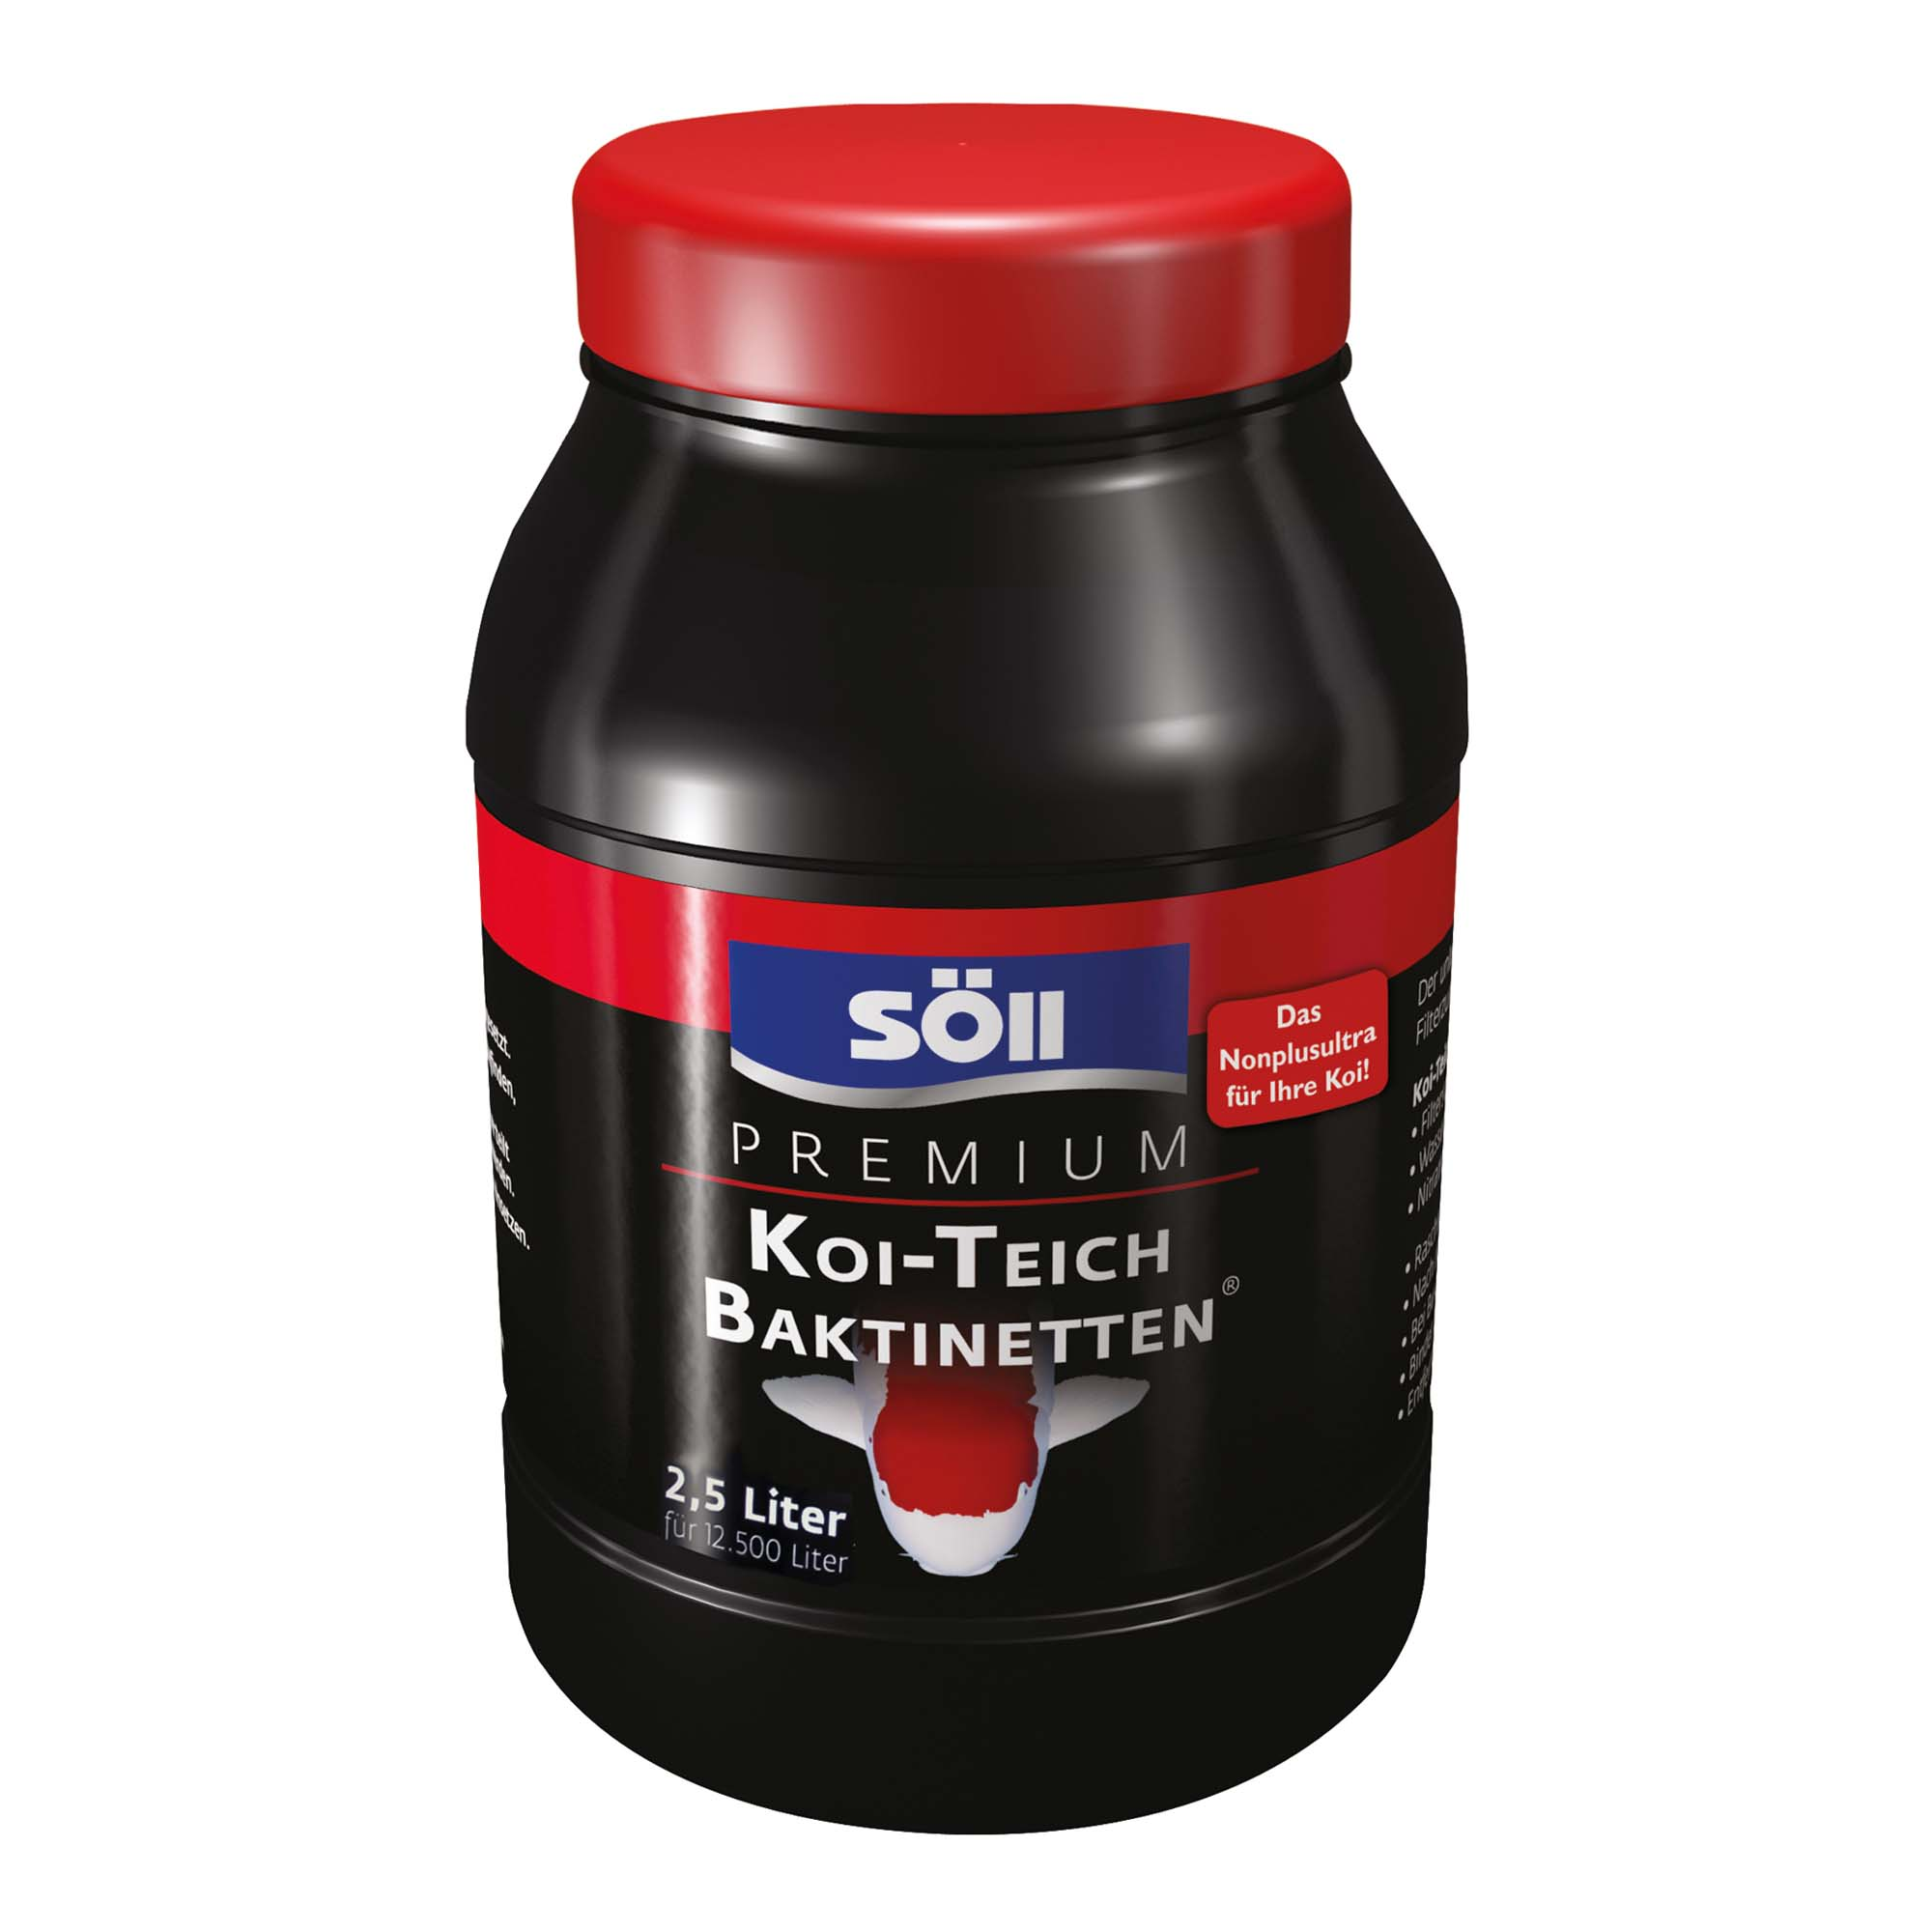 Premium Koi-Teich-Baktinetten 2,5 l + product picture